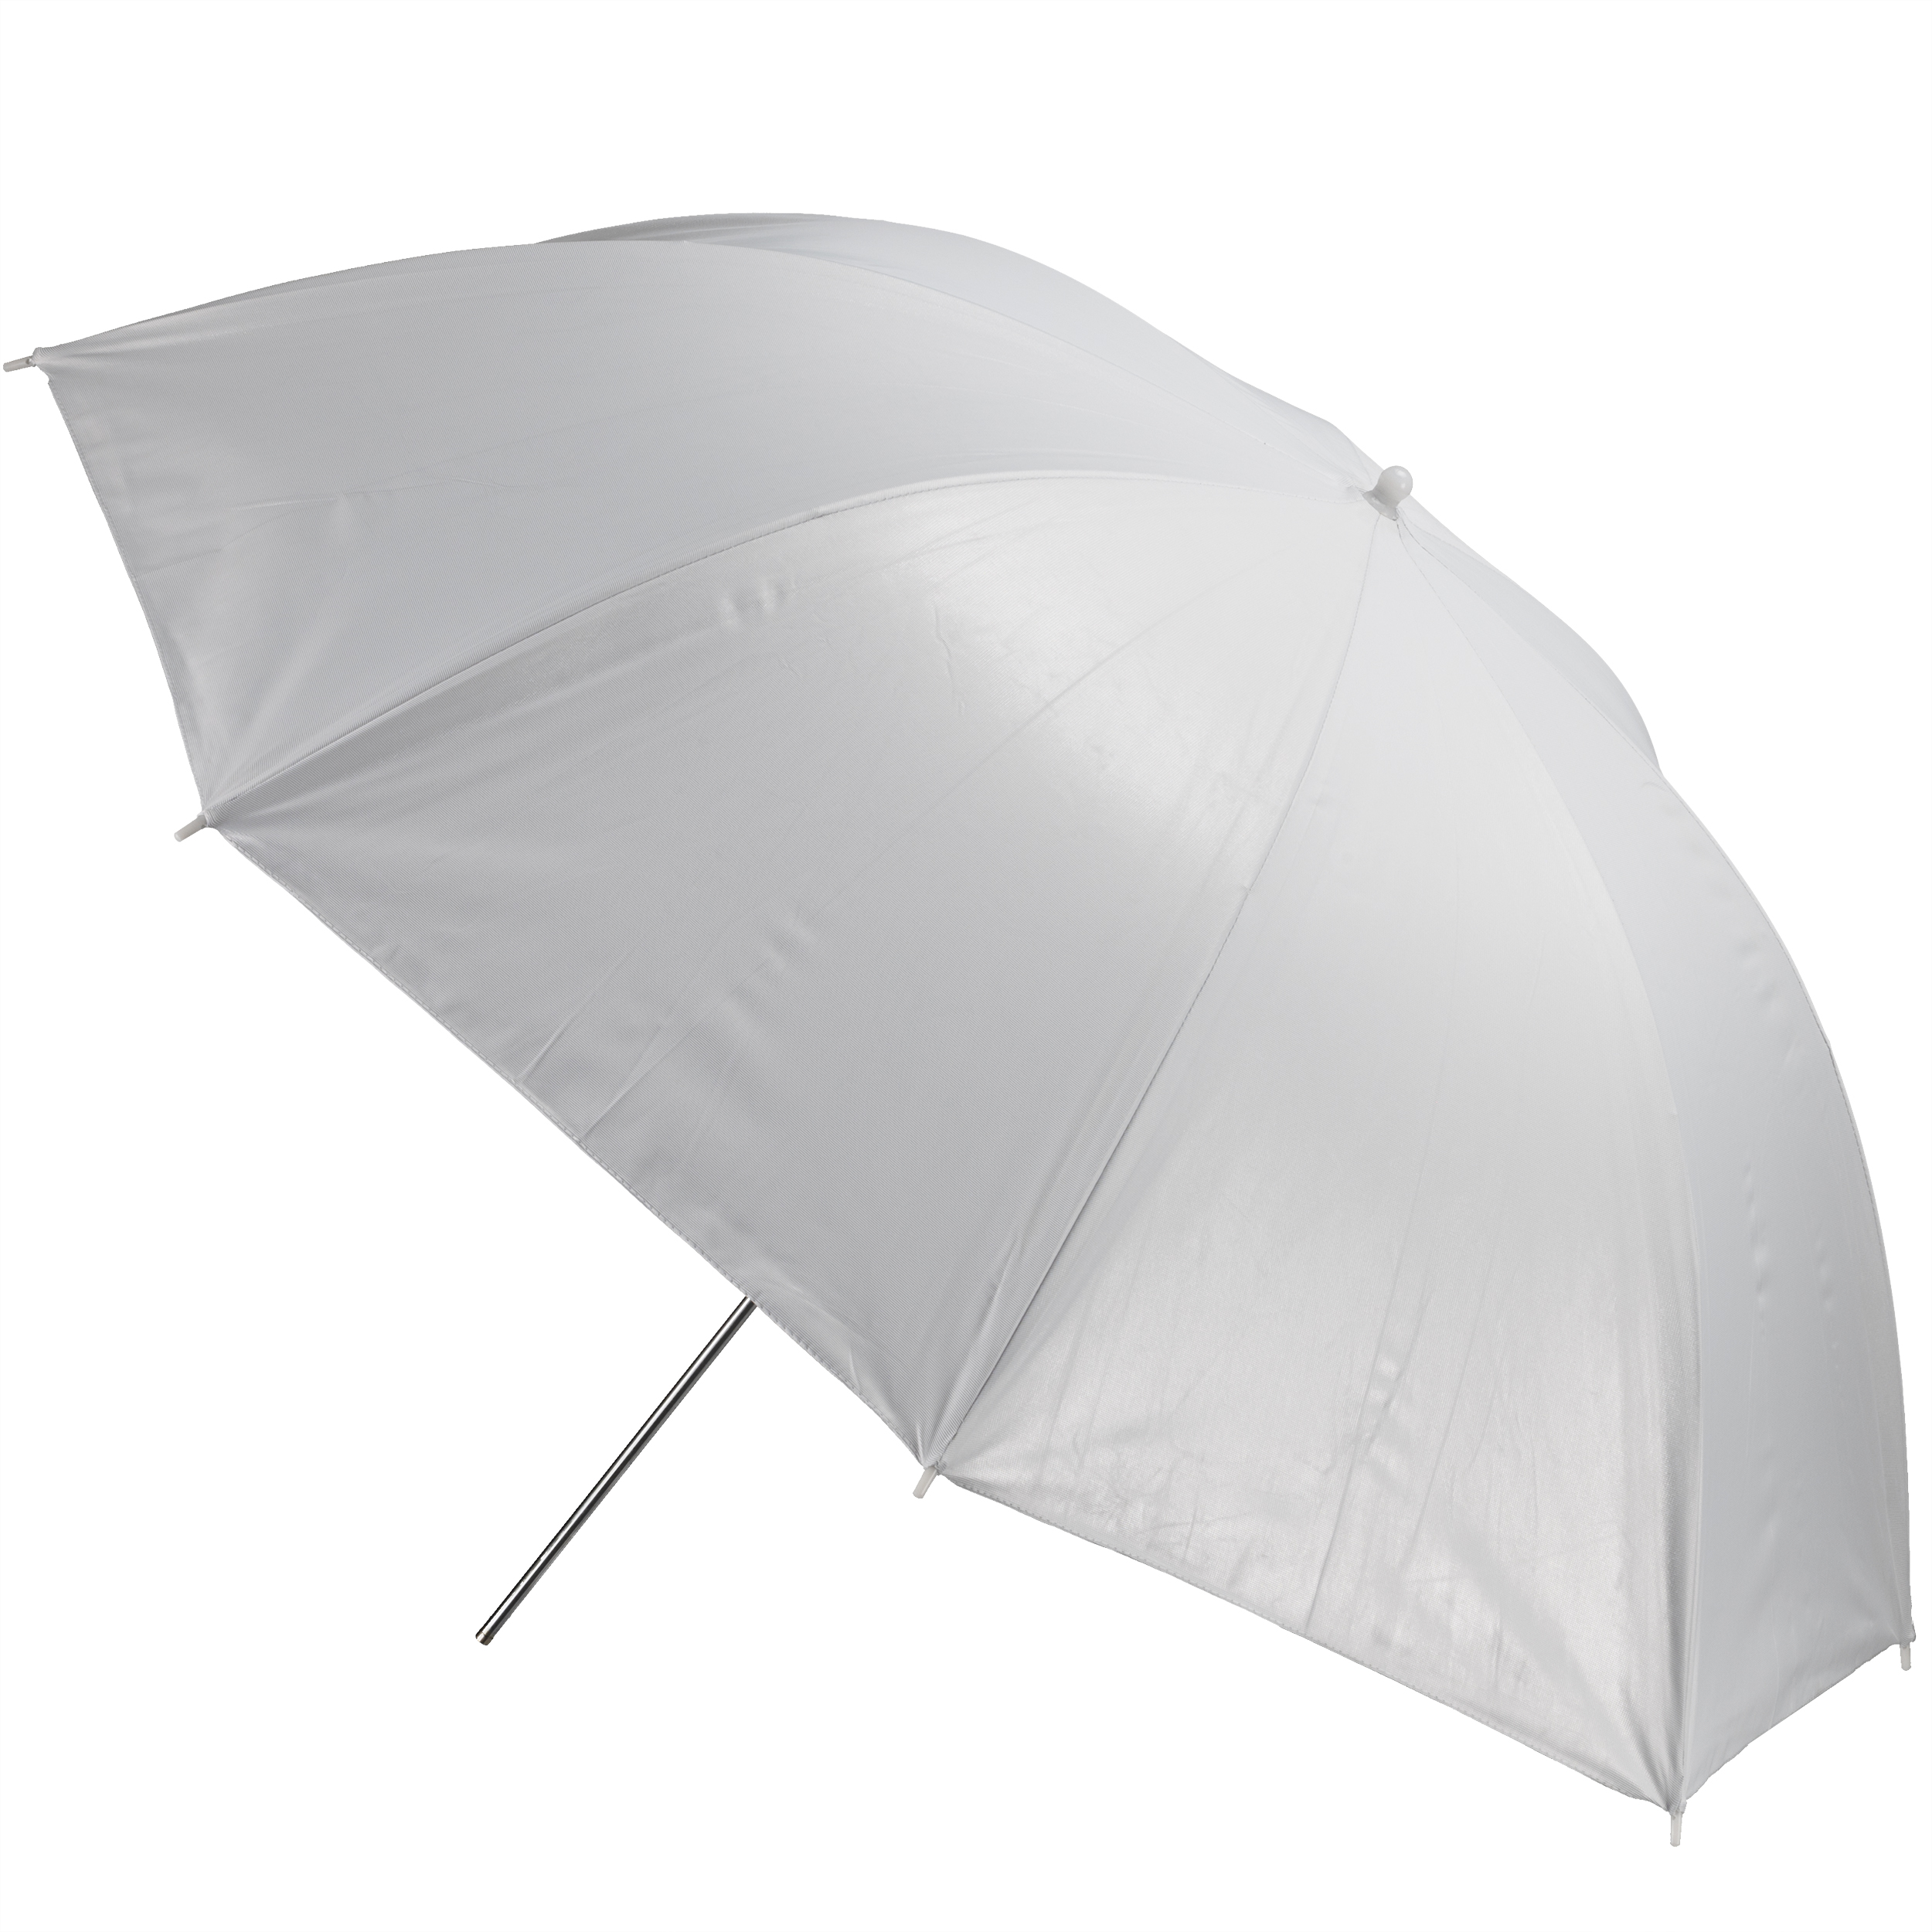 BRESSER SM-04 Reflective Umbrella white/silver 109 cm